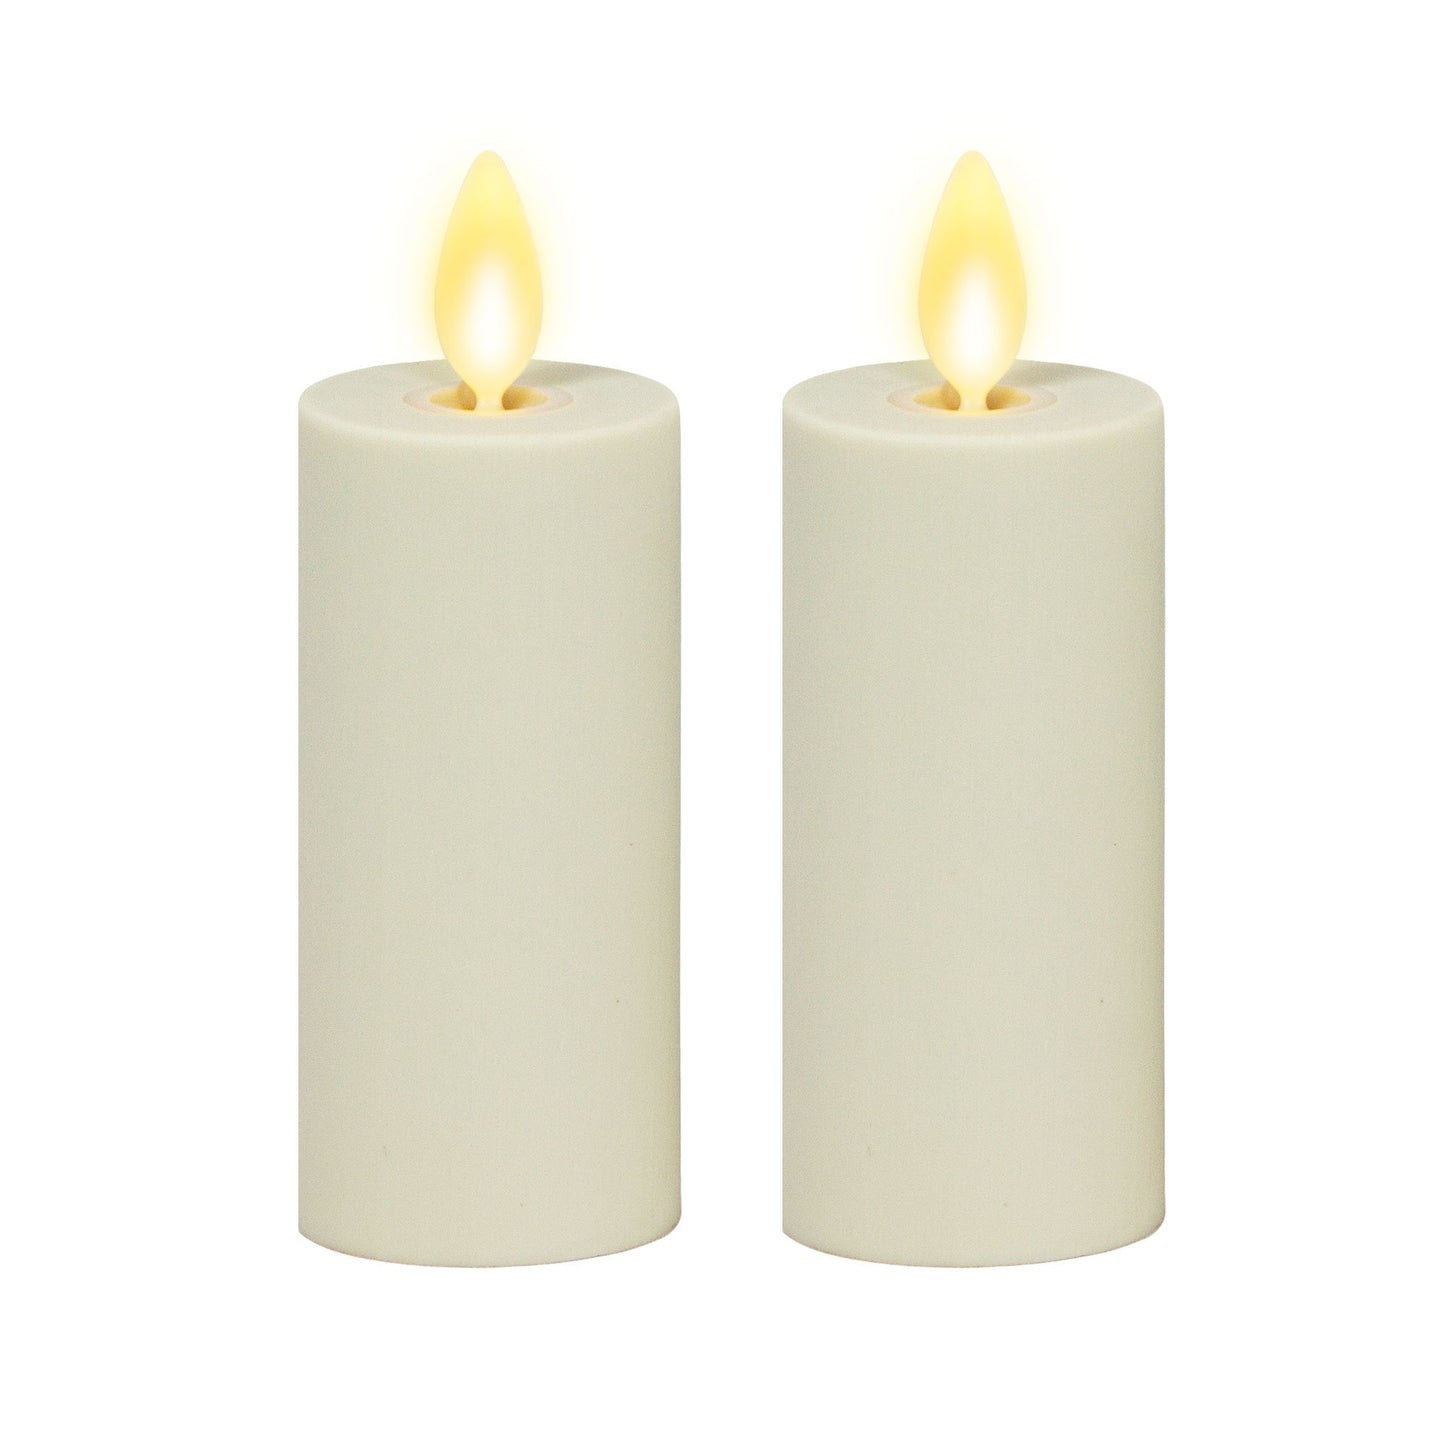 an image of Luminara's pearl candles